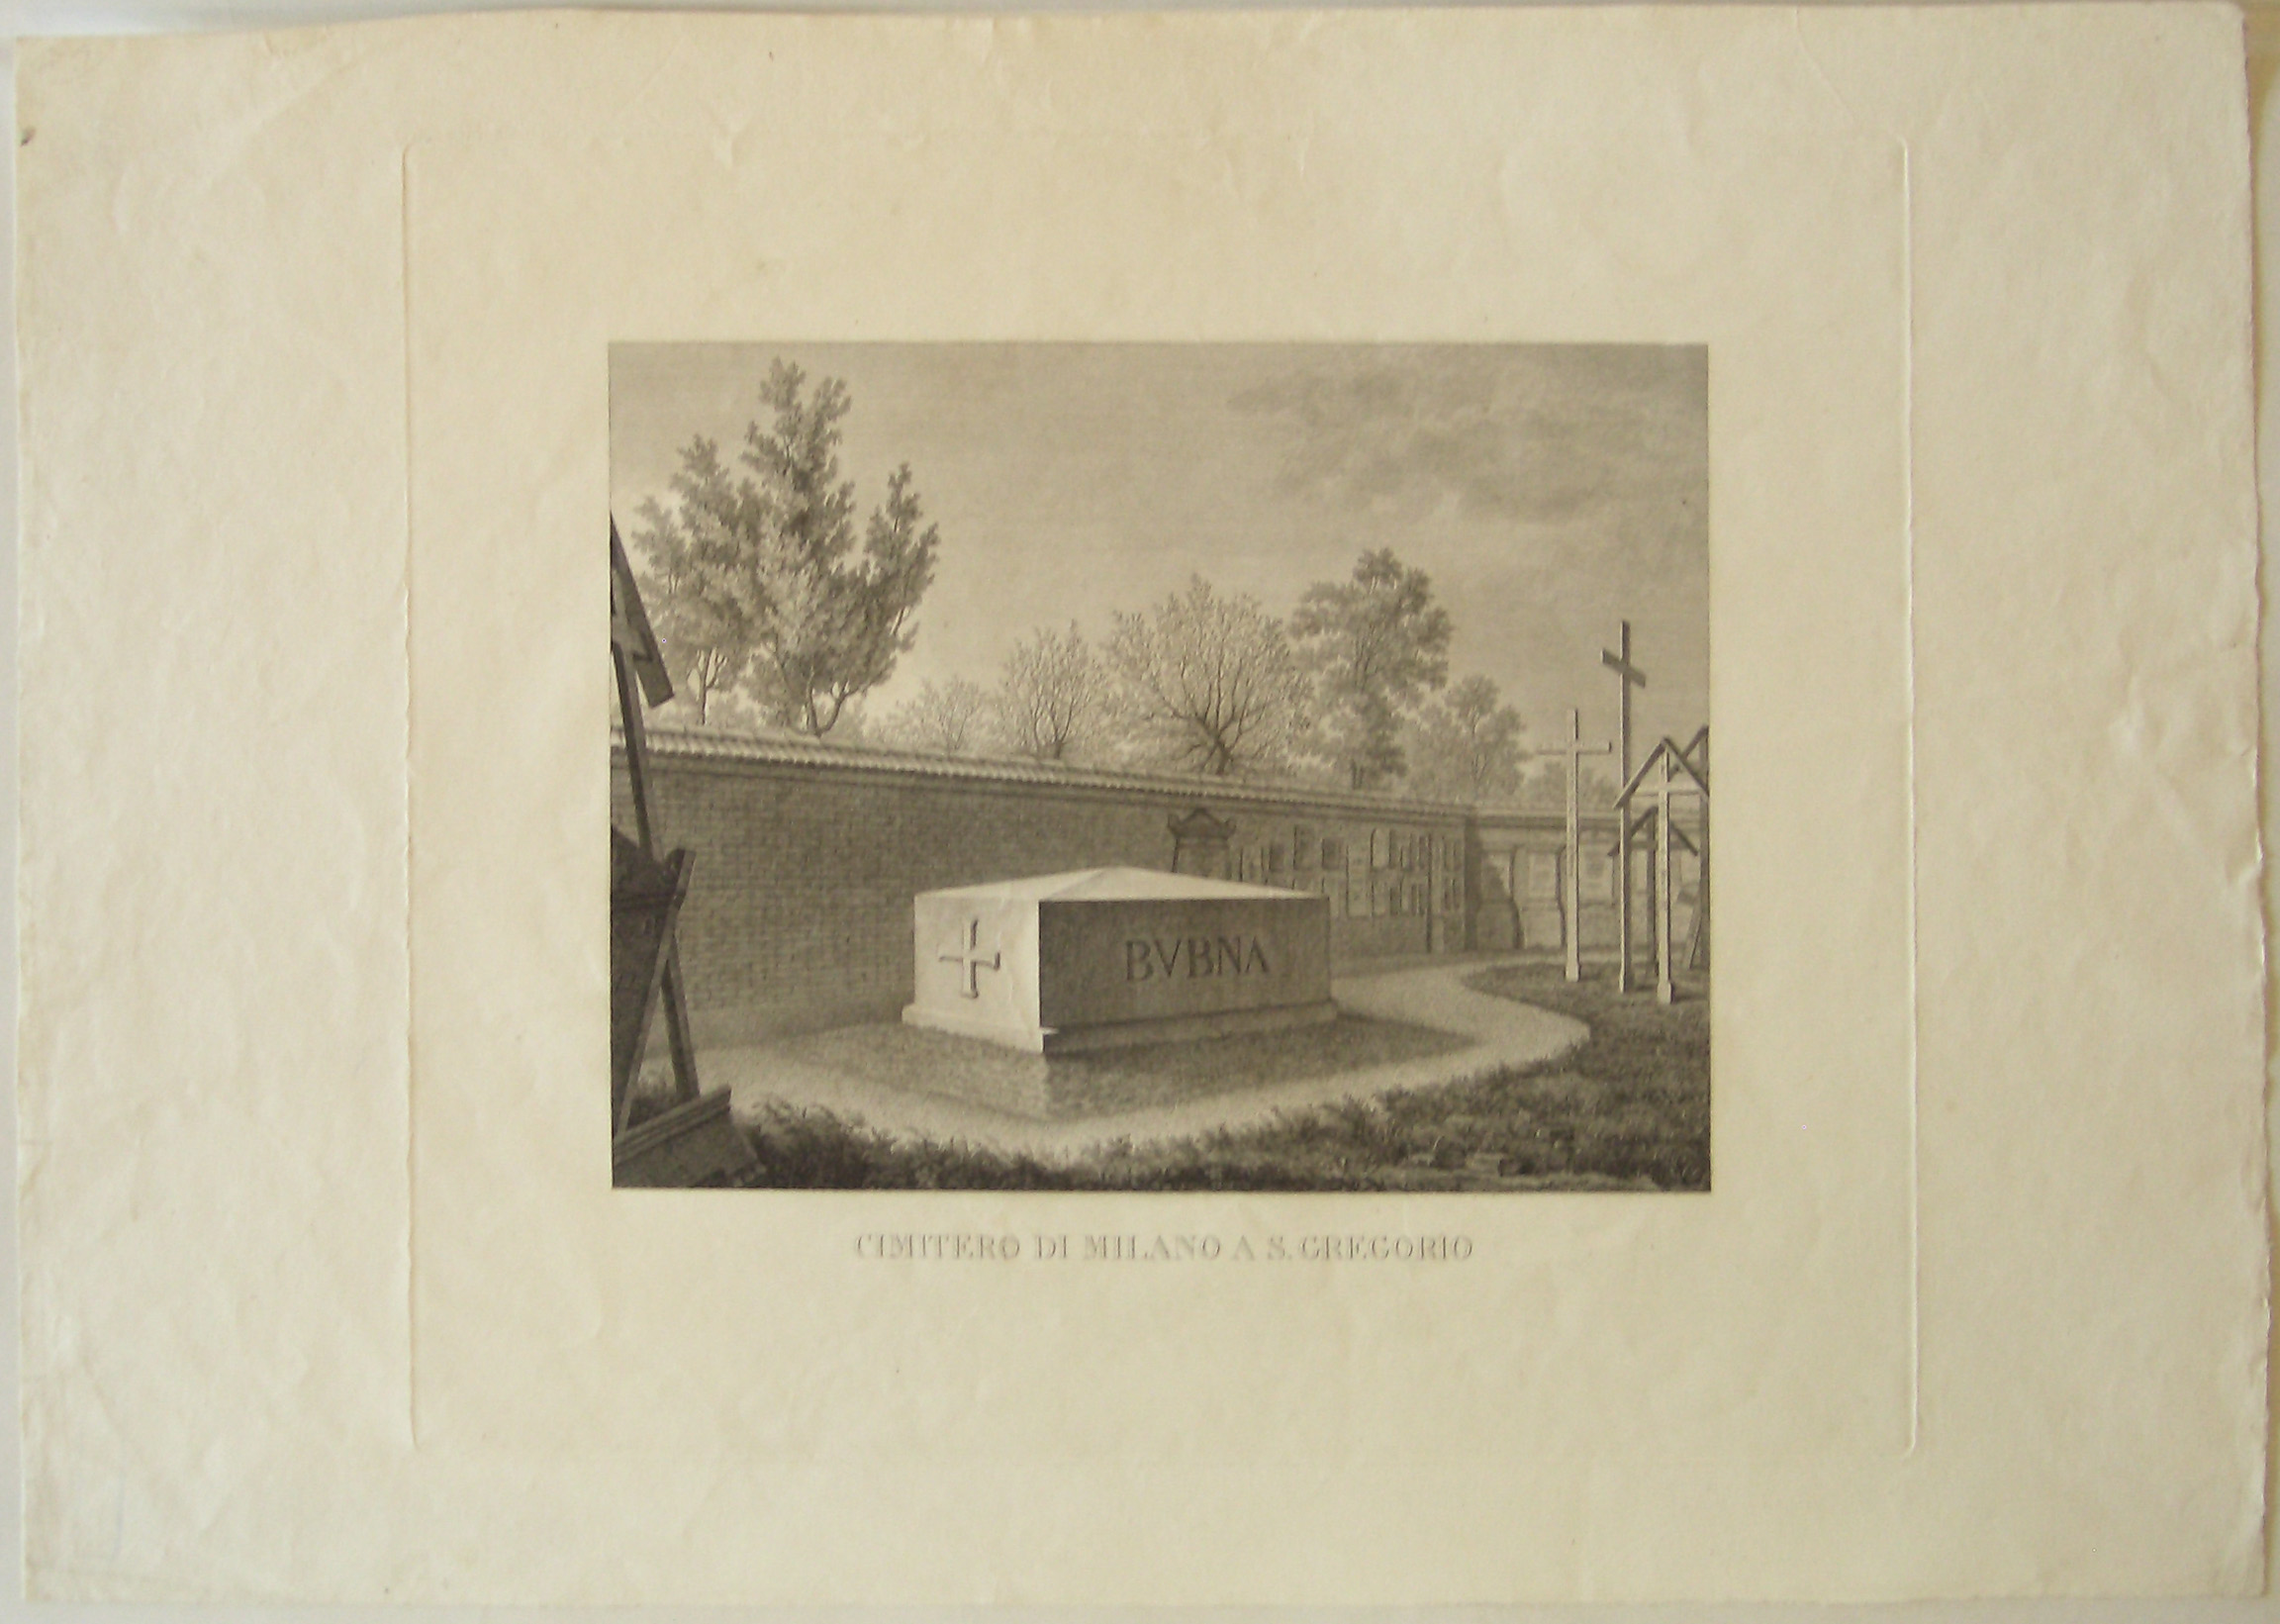 Cimitero di Milano a S.Gregorio, progetto architettonico: tomba del generale Bubna a Milano - veduta prospettica (stampa) di Cagnola Luigi (sec. XIX)